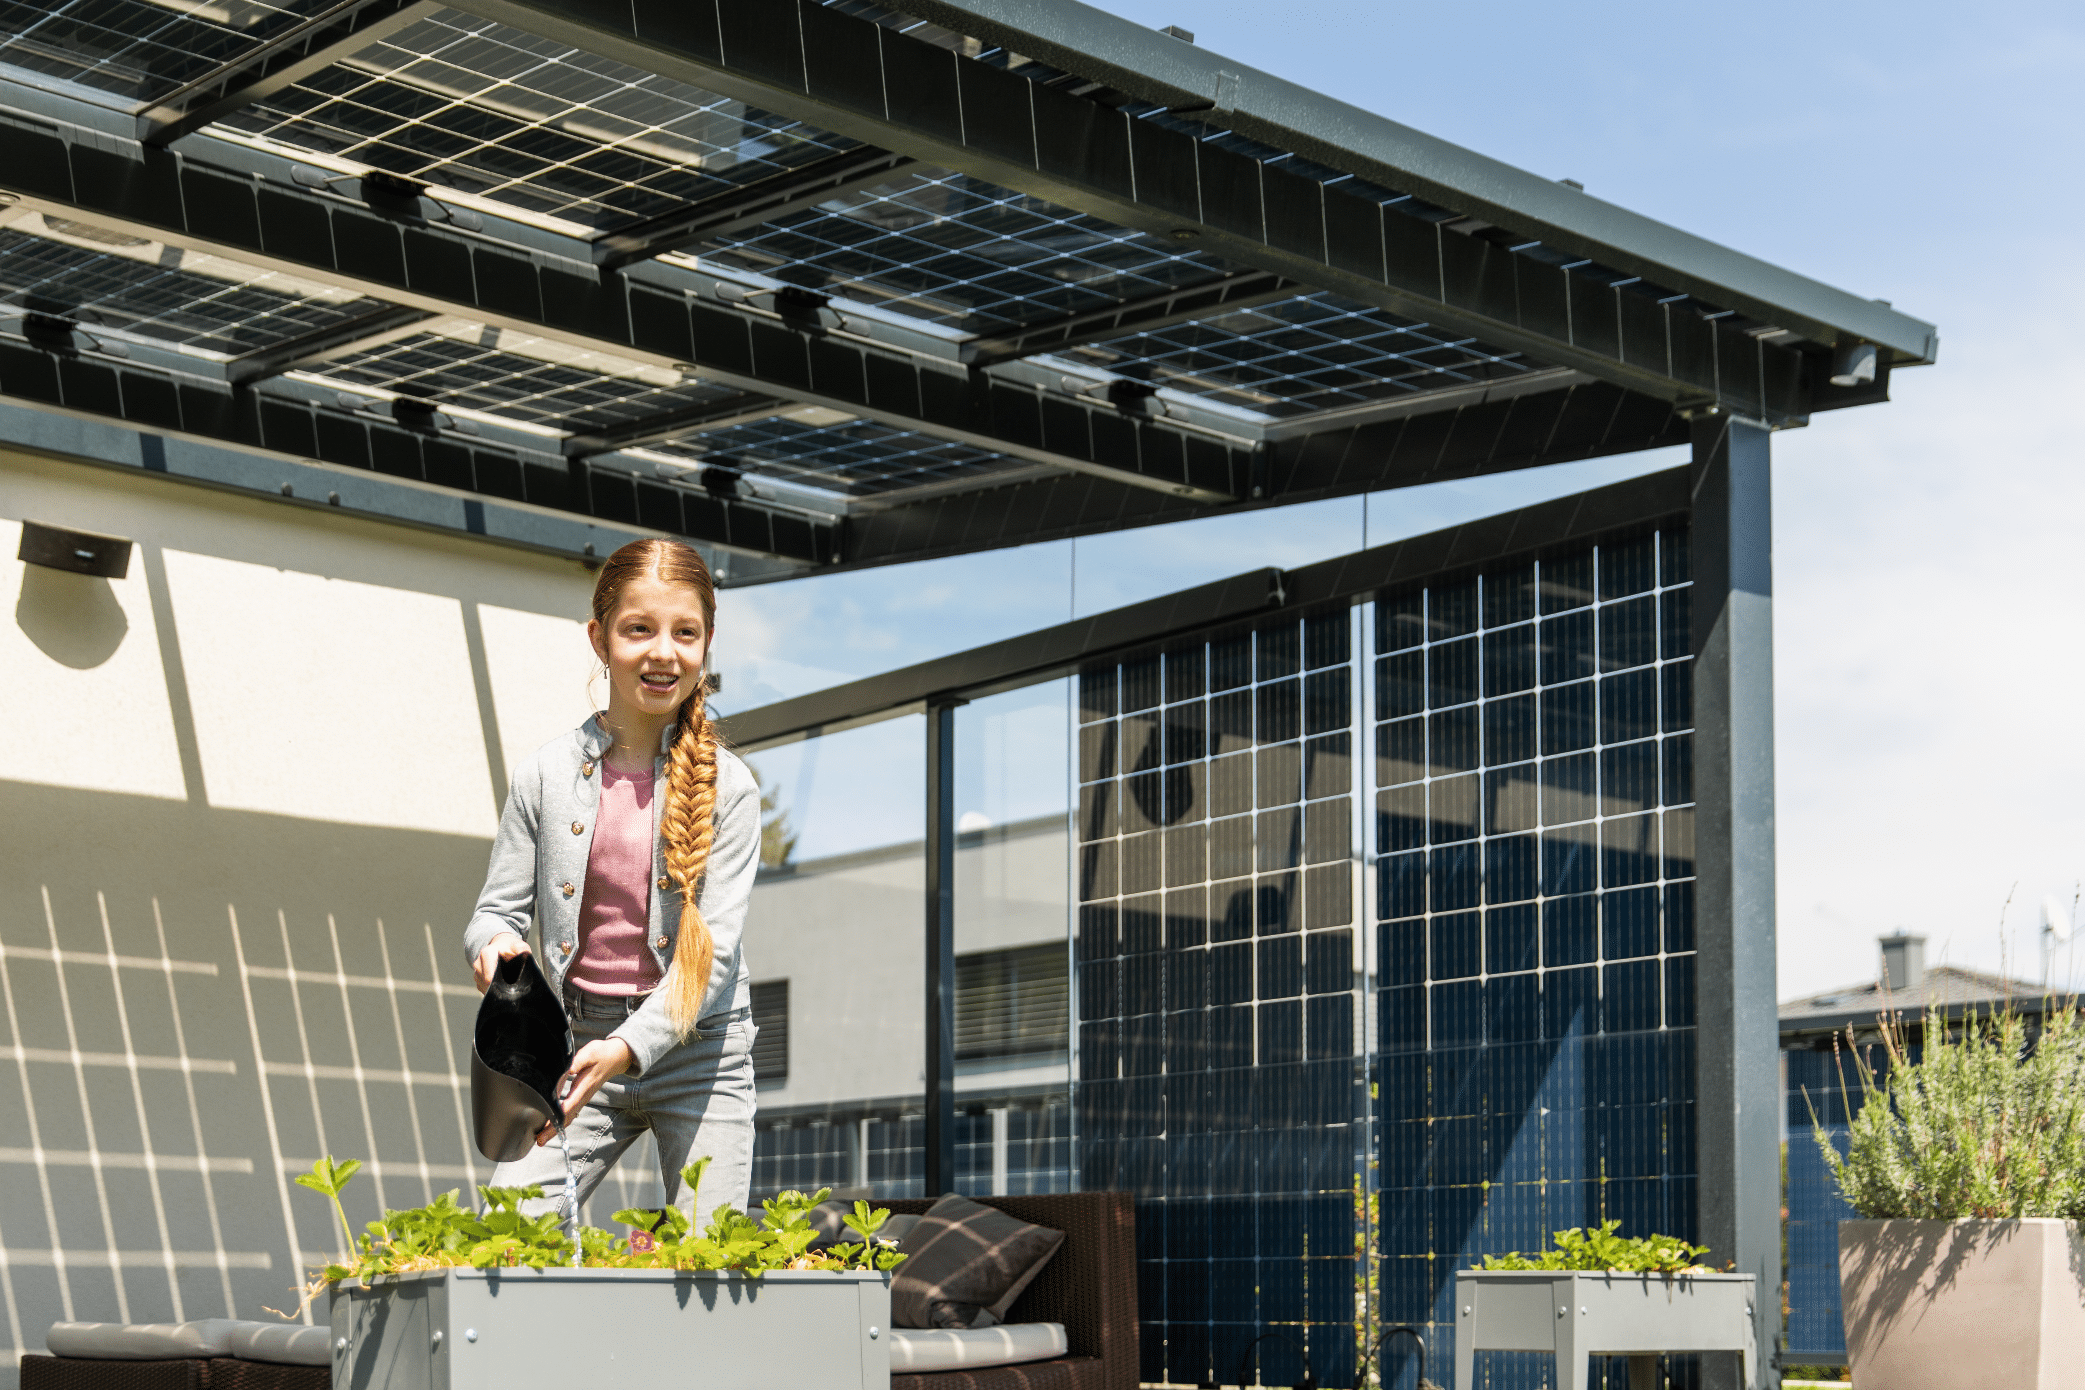 KIOTO Solar - eine Marke von Sonnenkraft zeigt erneuerbare und nachhaltige Energie in Form von Photovoltaikpaneelen auf einer Terrasse.